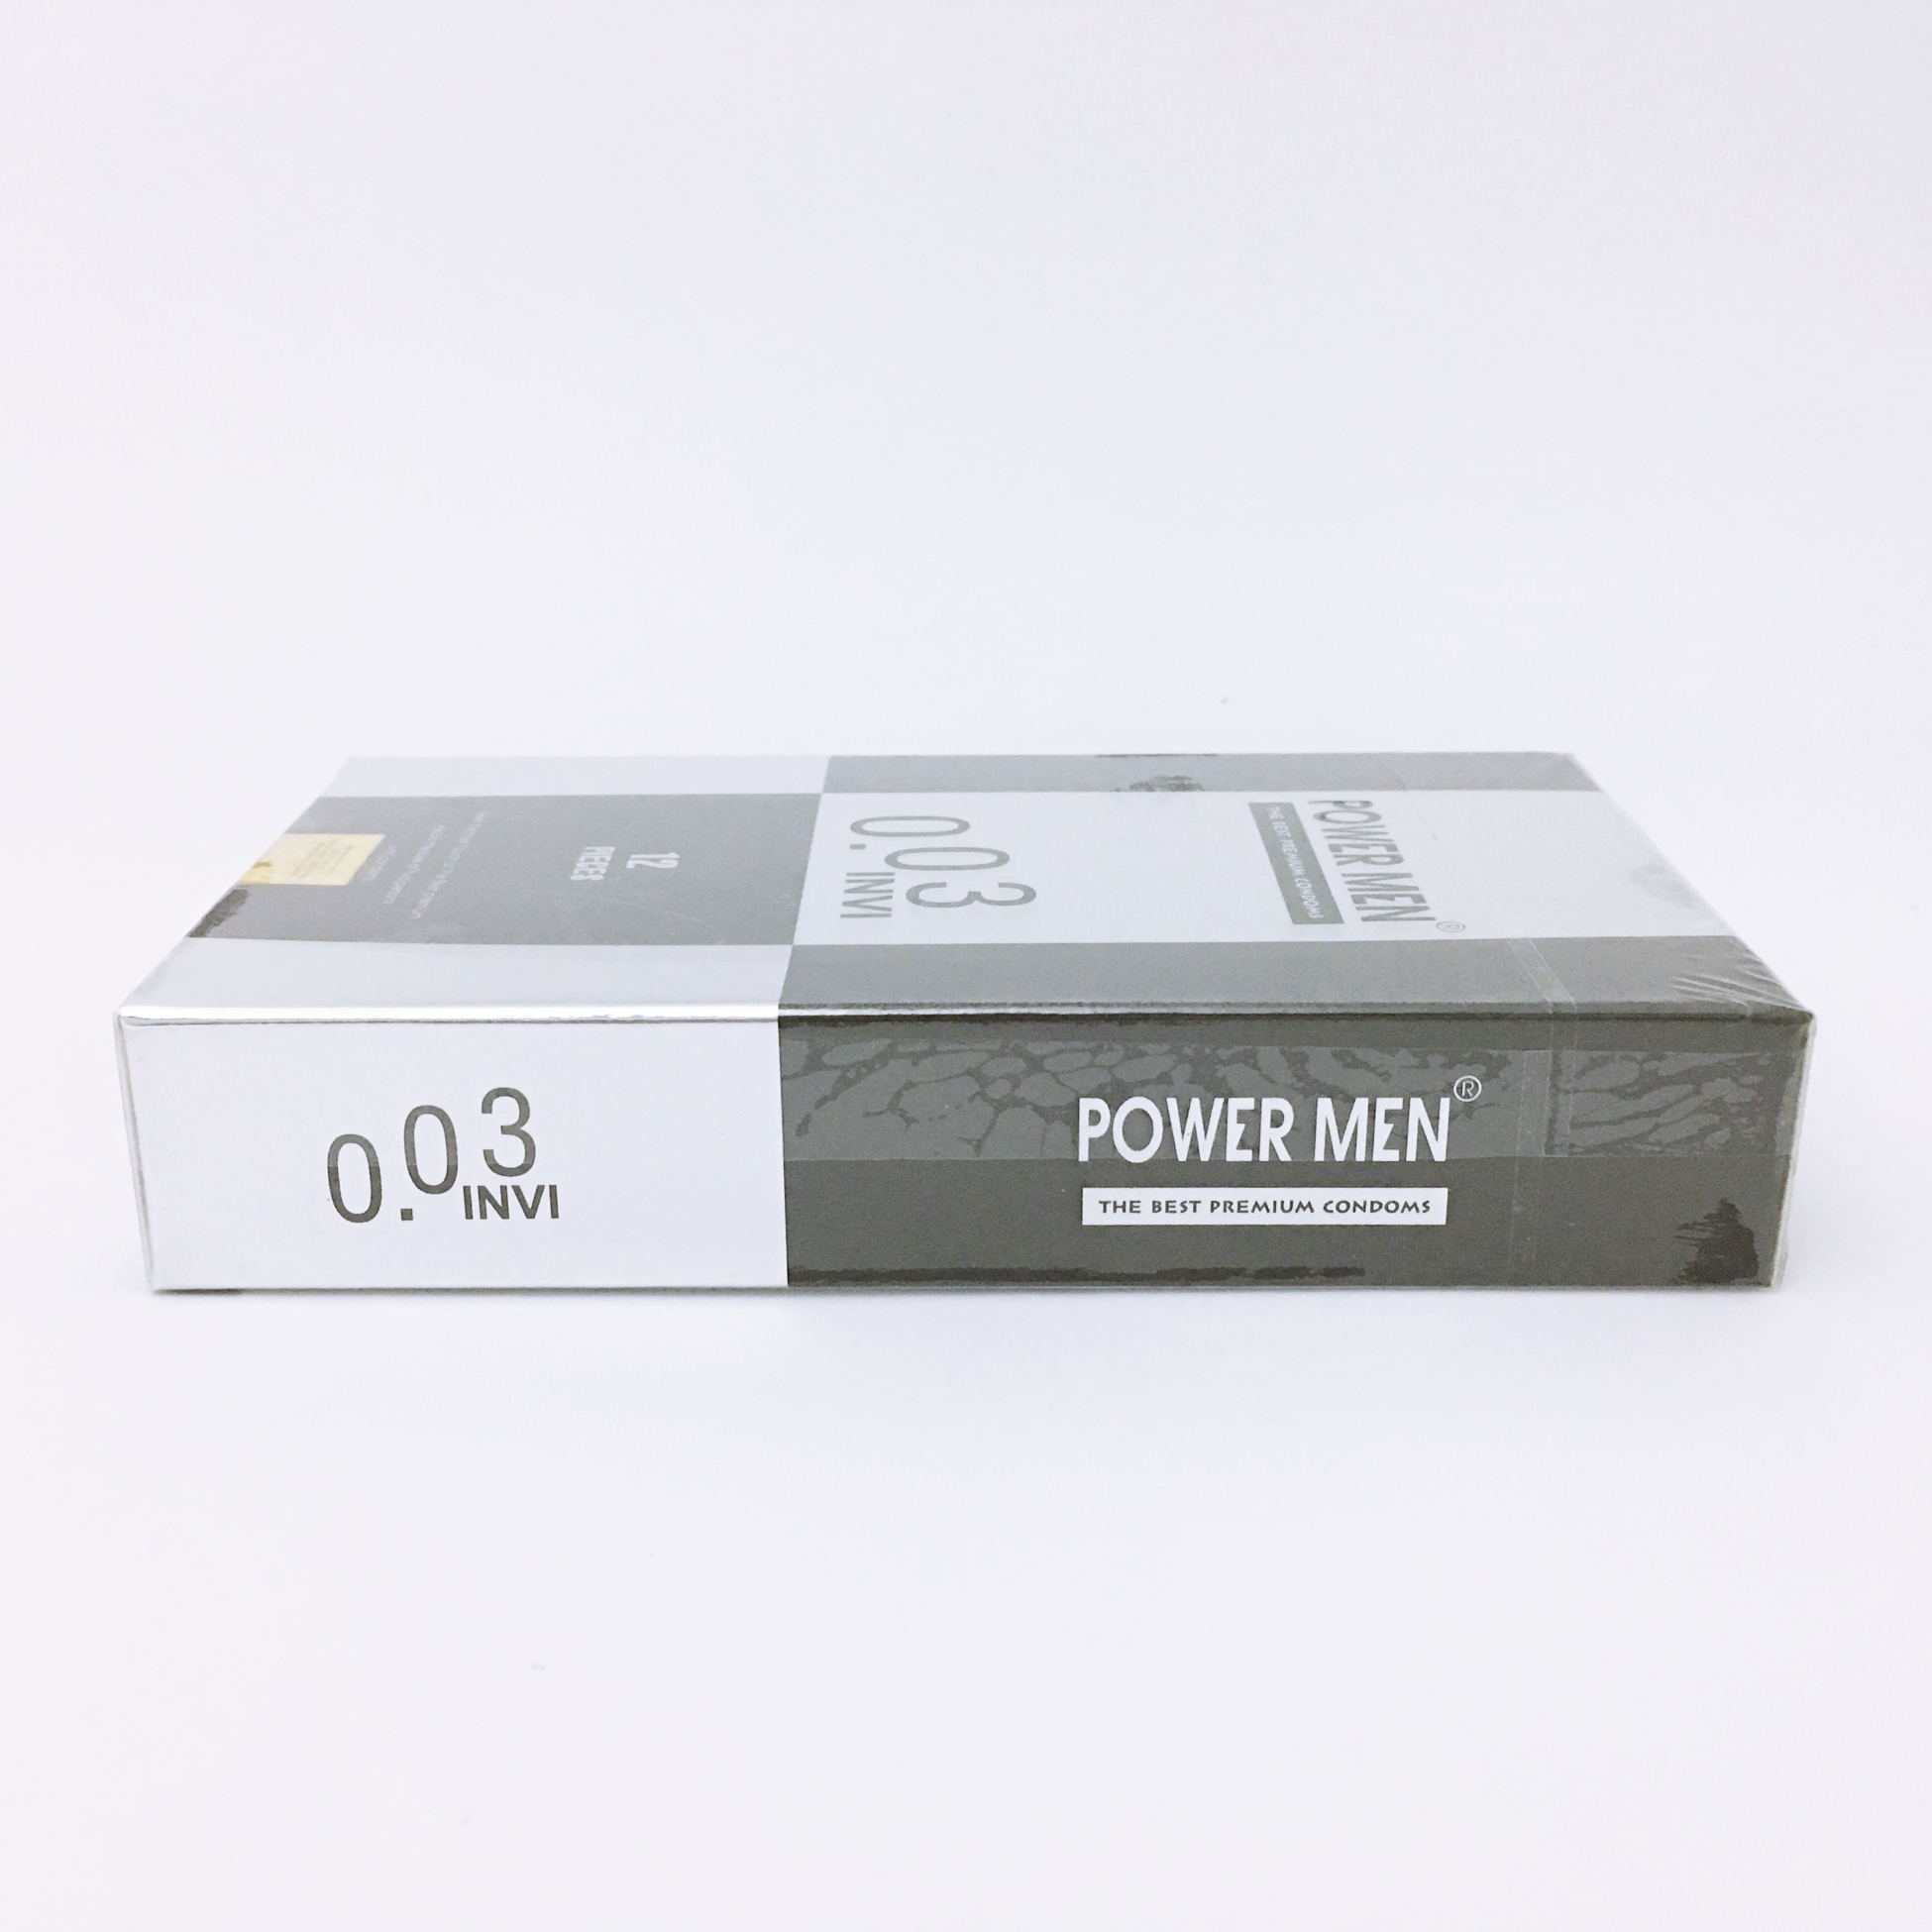 Bao Cao Su 0.03 mm Power Men Invi (H12) - Siêu Mỏng - 100% Hàng Chính Hãng - Che Tên Sản Phẩm